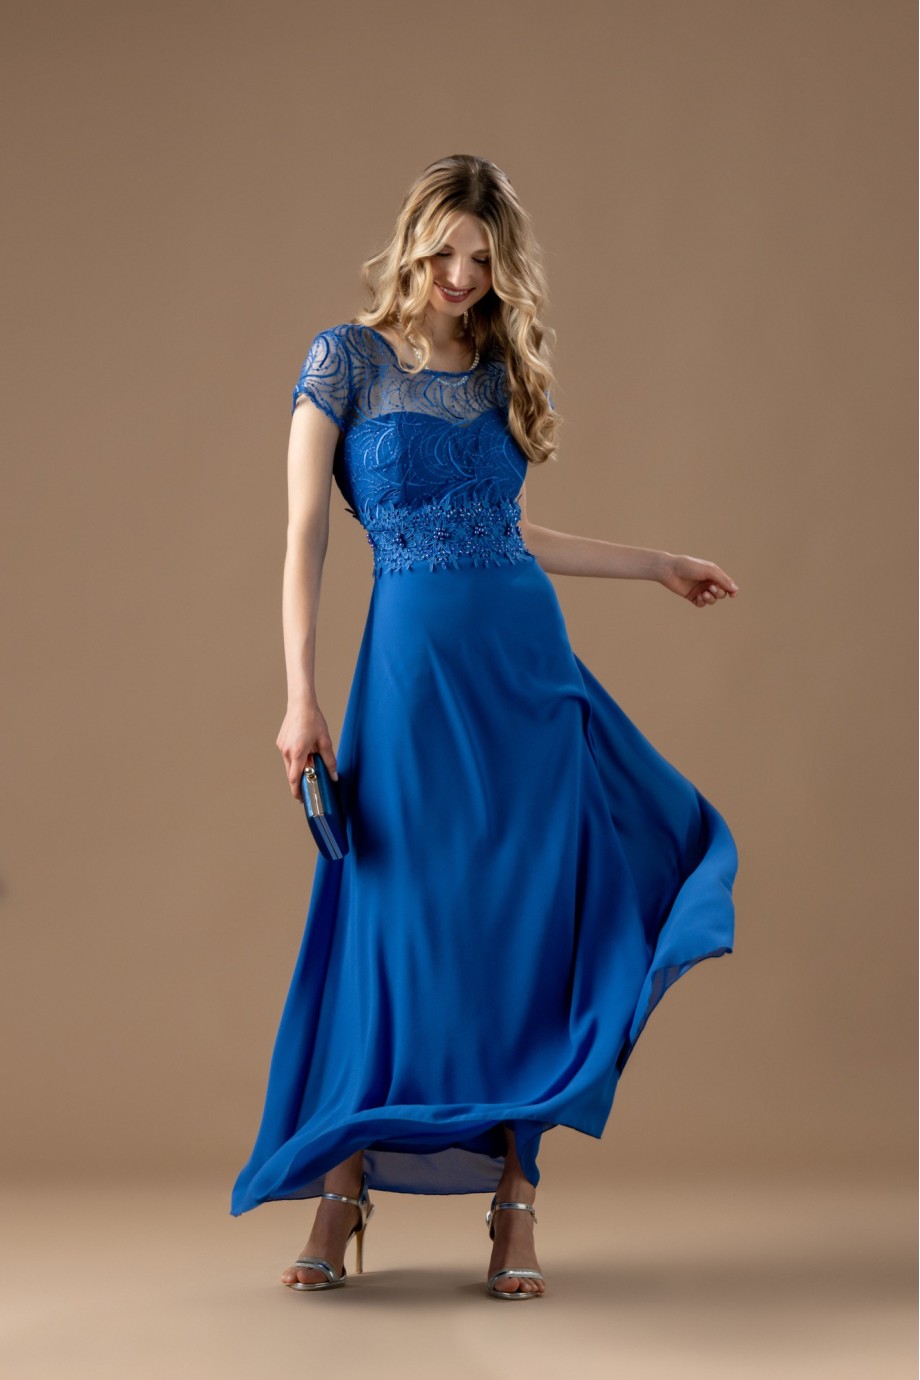 Μακρύ μπλε ηλεκτρικ φόρεμα με ιδιαίτερη δαντέλα